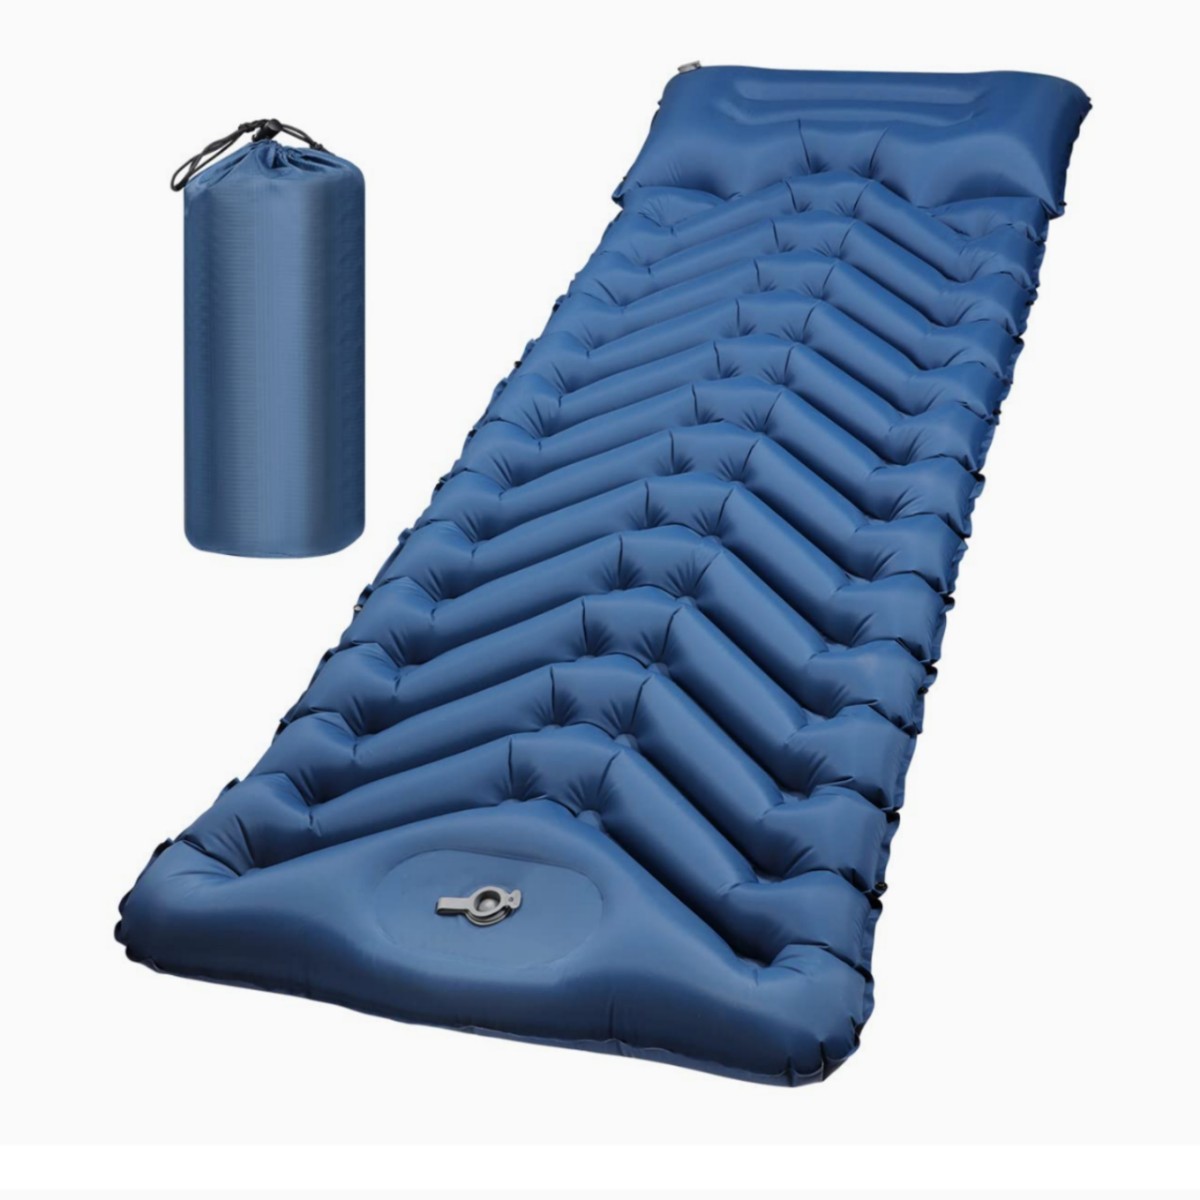 キャンプマット アウトドアマット テントマット キャンピングマット エアーマット 足踏み式 枕付き 防水 折り畳み式